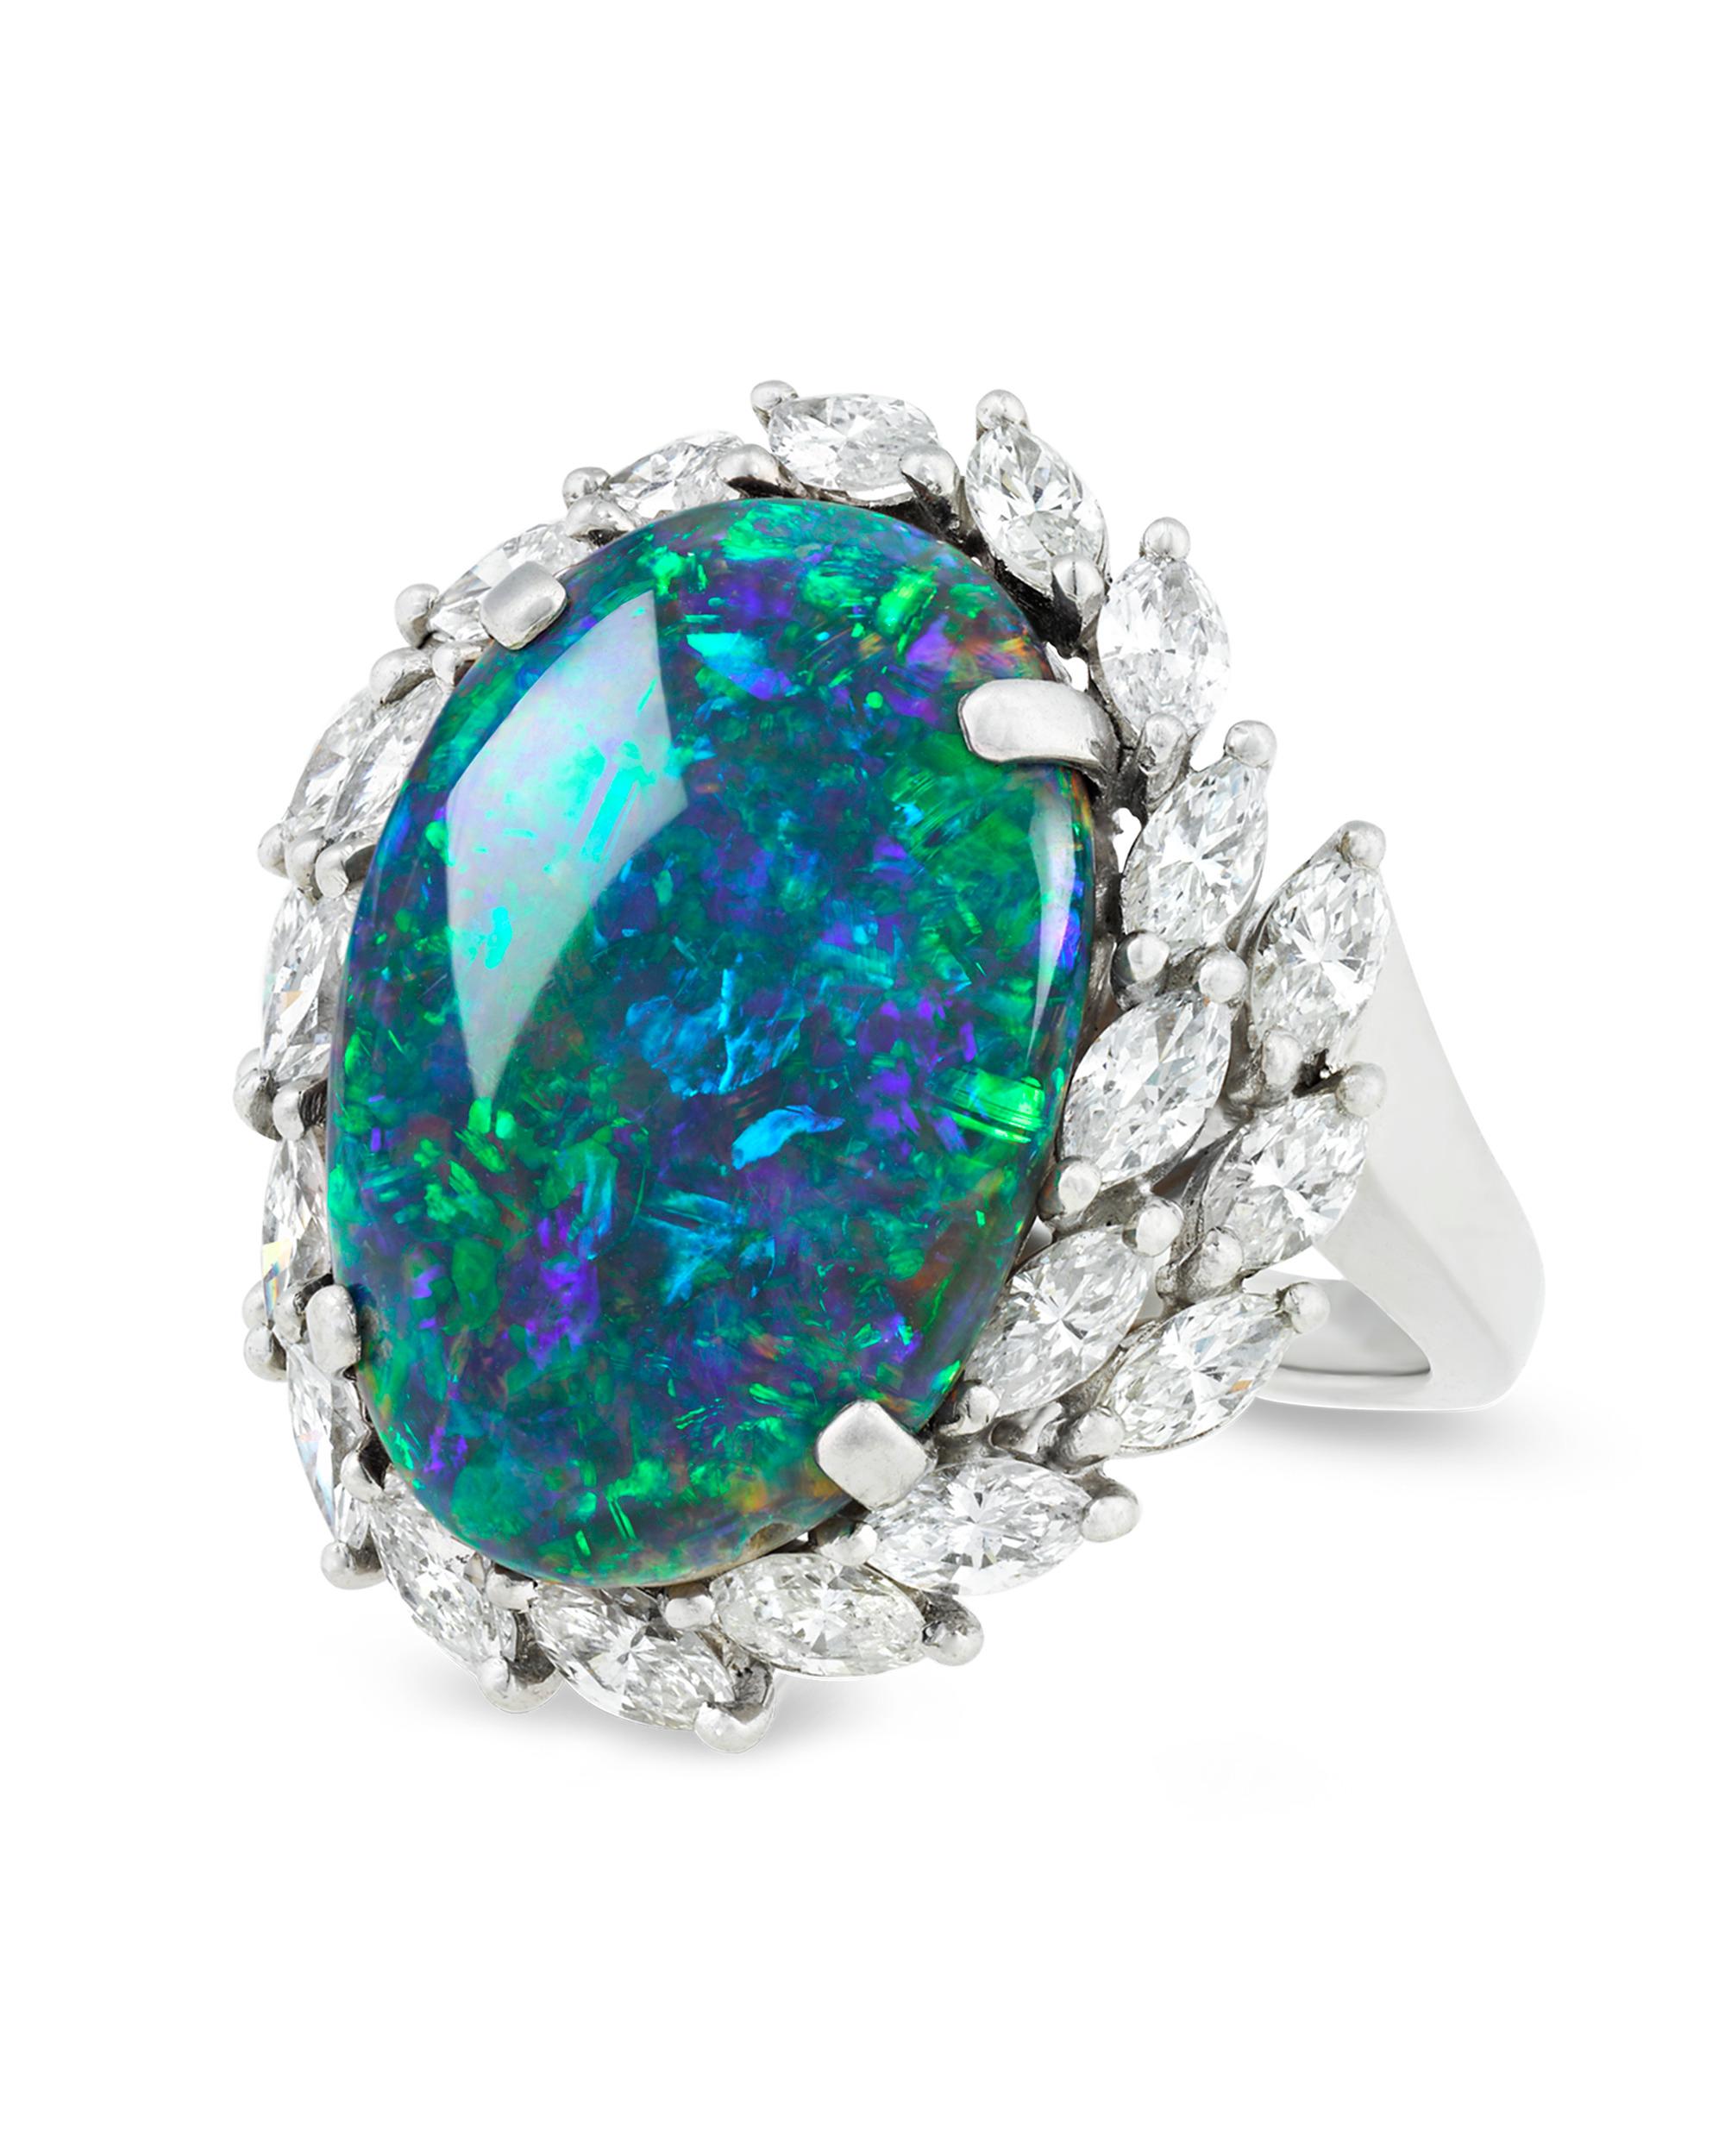 Gekrönt von einem Lorbeermotiv aus weißen Diamanten, besticht dieser hinreißende schwarze Opal durch seine dynamische Schönheit und seine außergewöhnliche Farbe. Mit einem Gewicht von 8,28 Karat zeigt dieser atemberaubende Edelstein feurige Rot- und